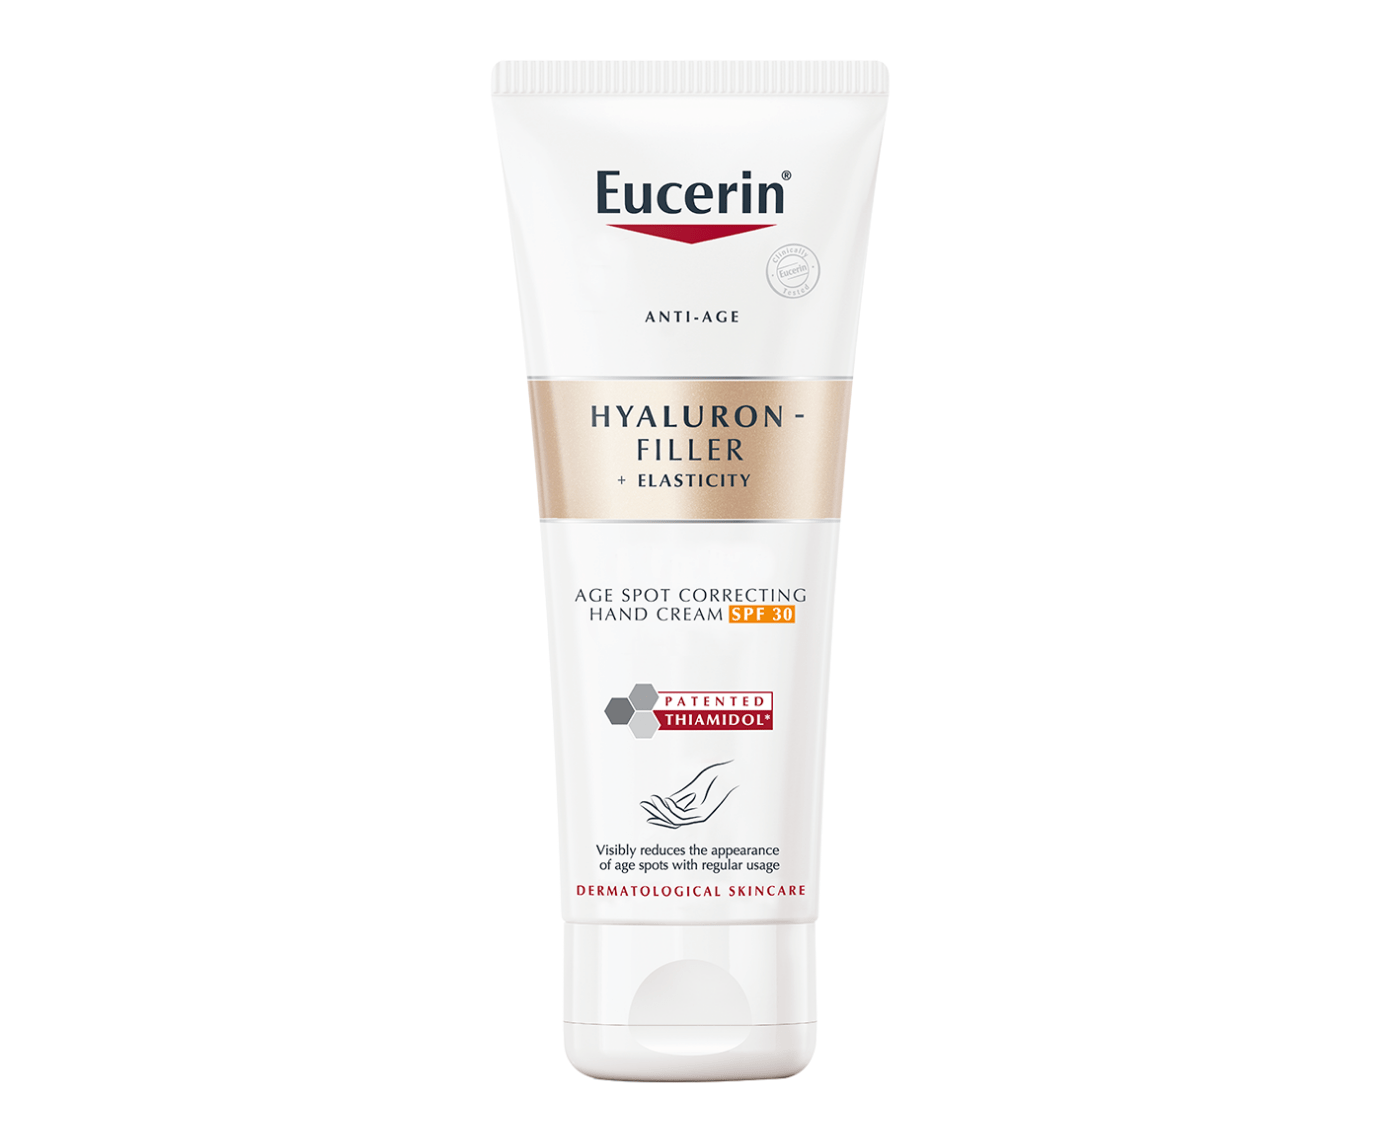 Packshot of Eucerin Hyaluron-Filler + Elasticity Age Spot Correcting Hand Cream SPF 30